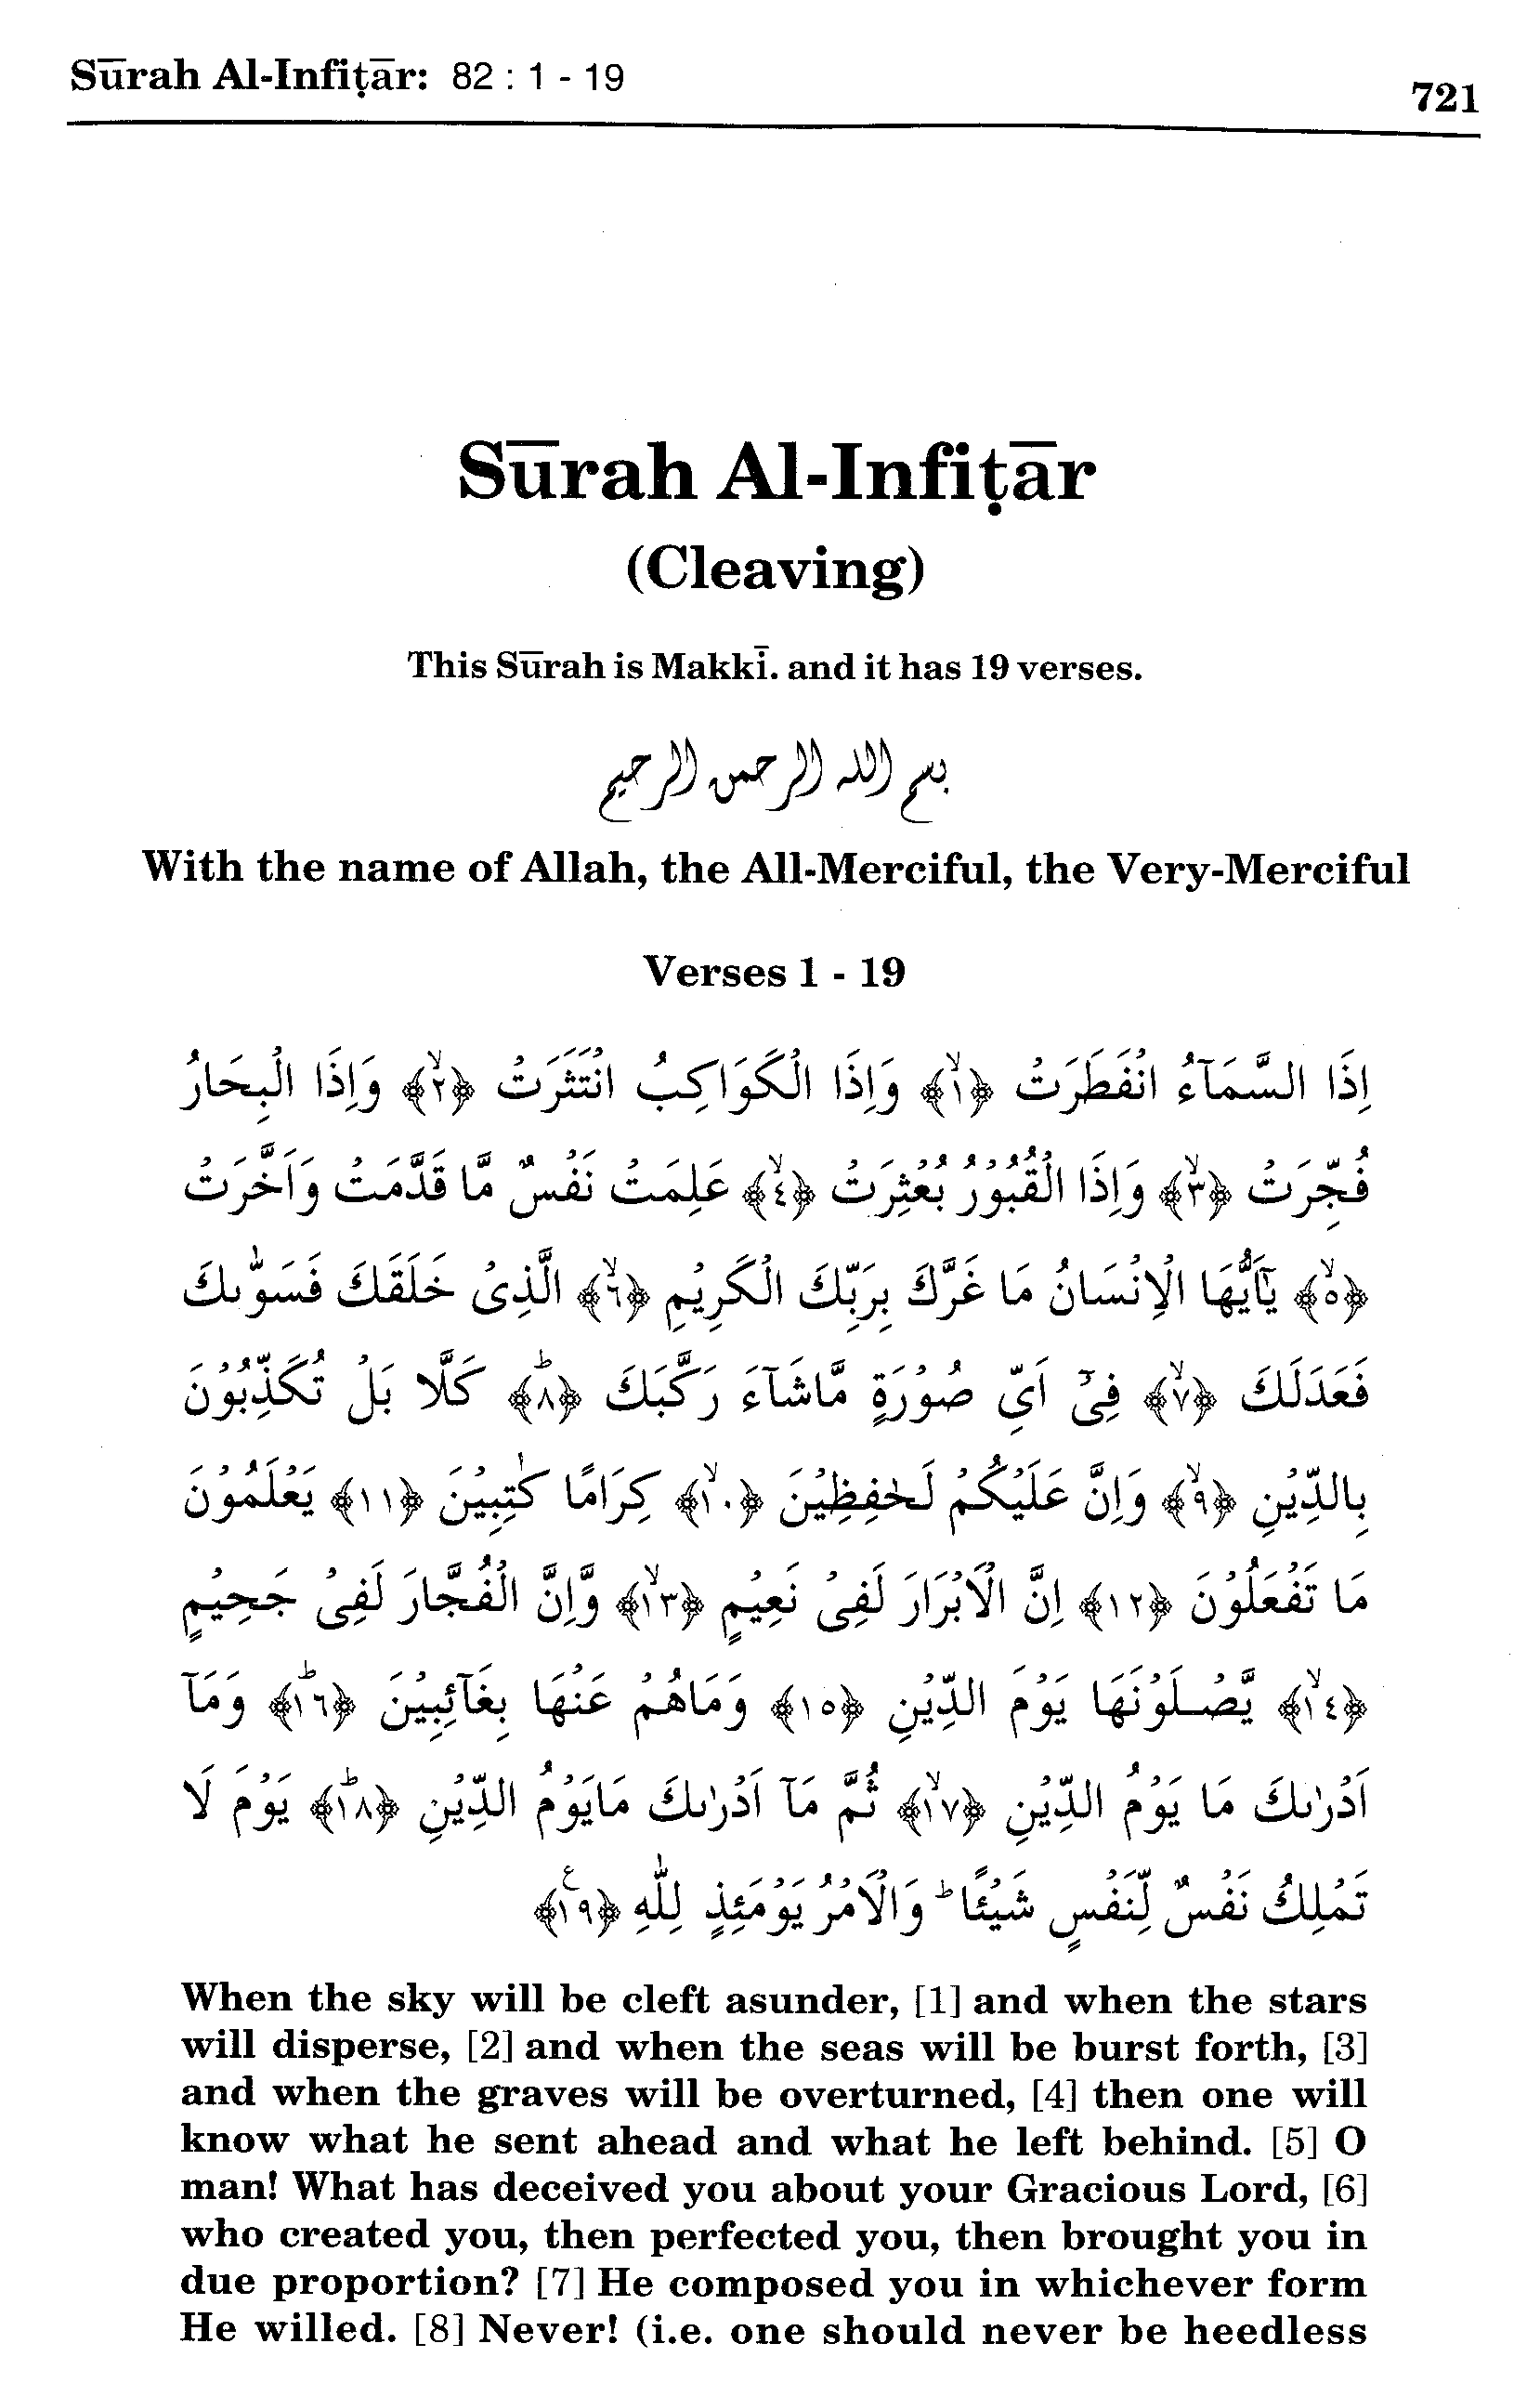 Surah al alaq ayat 1-19